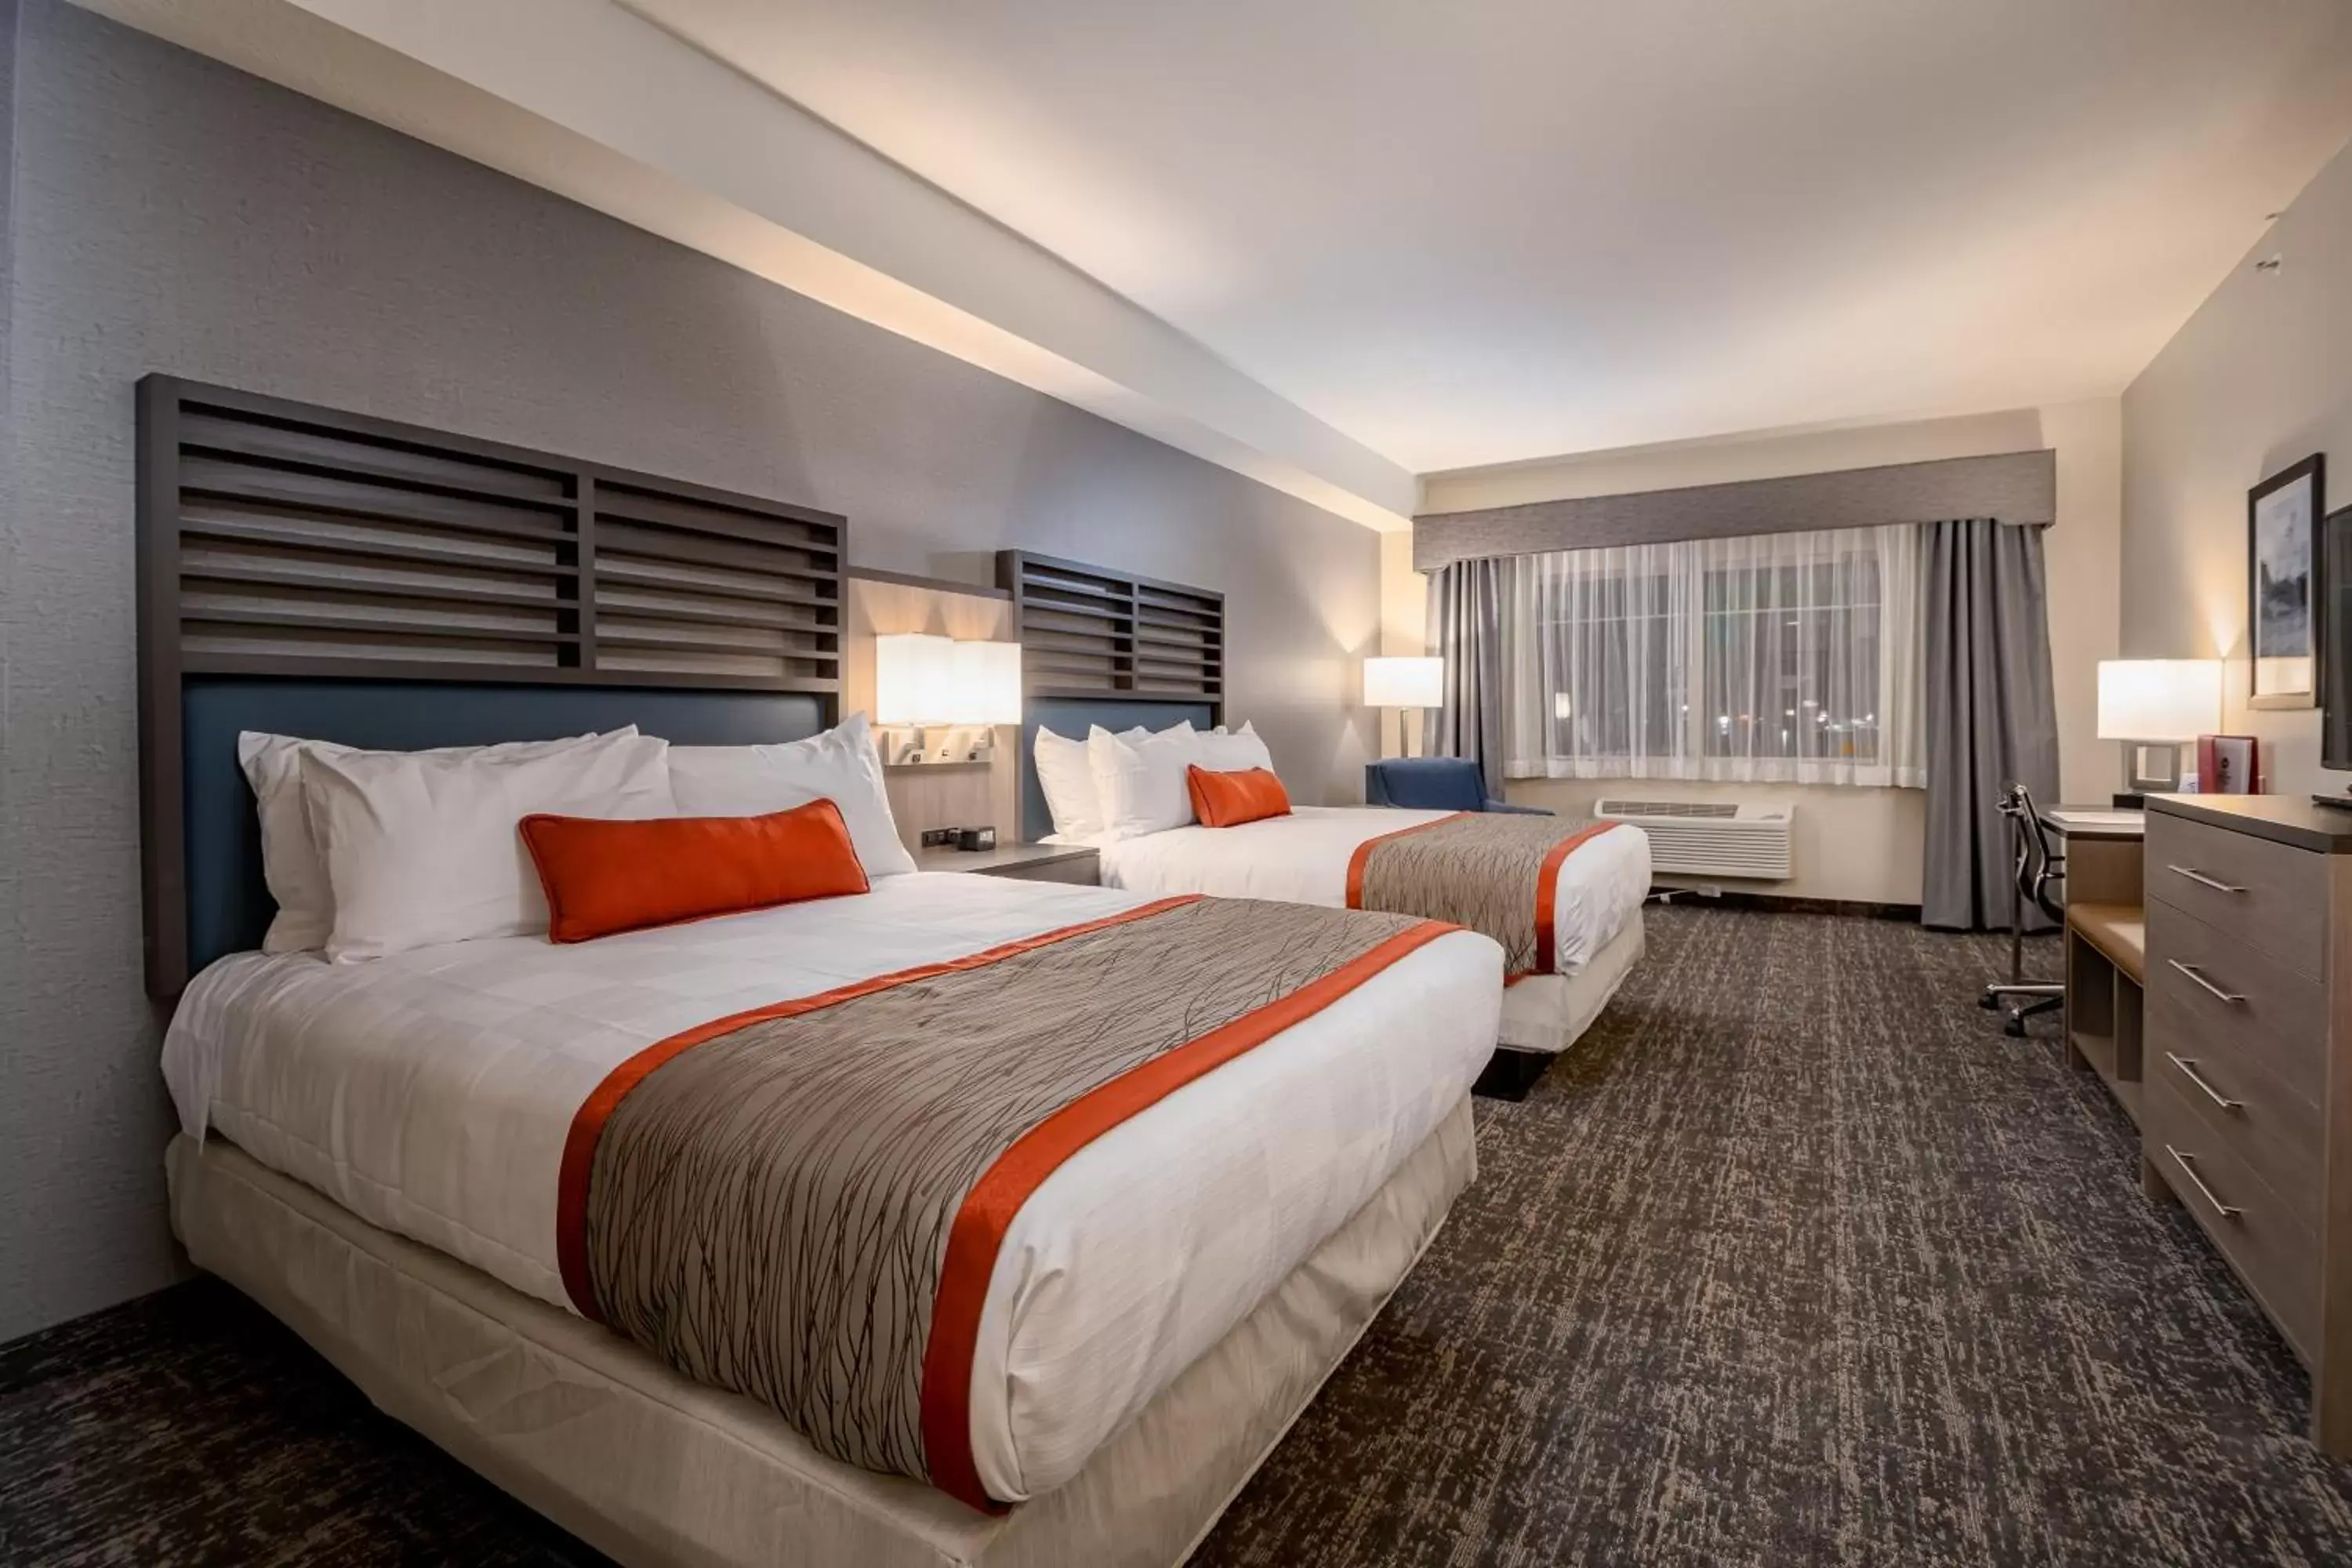 Bedroom, Bed in Best Western Plus Heber Valley Hotel